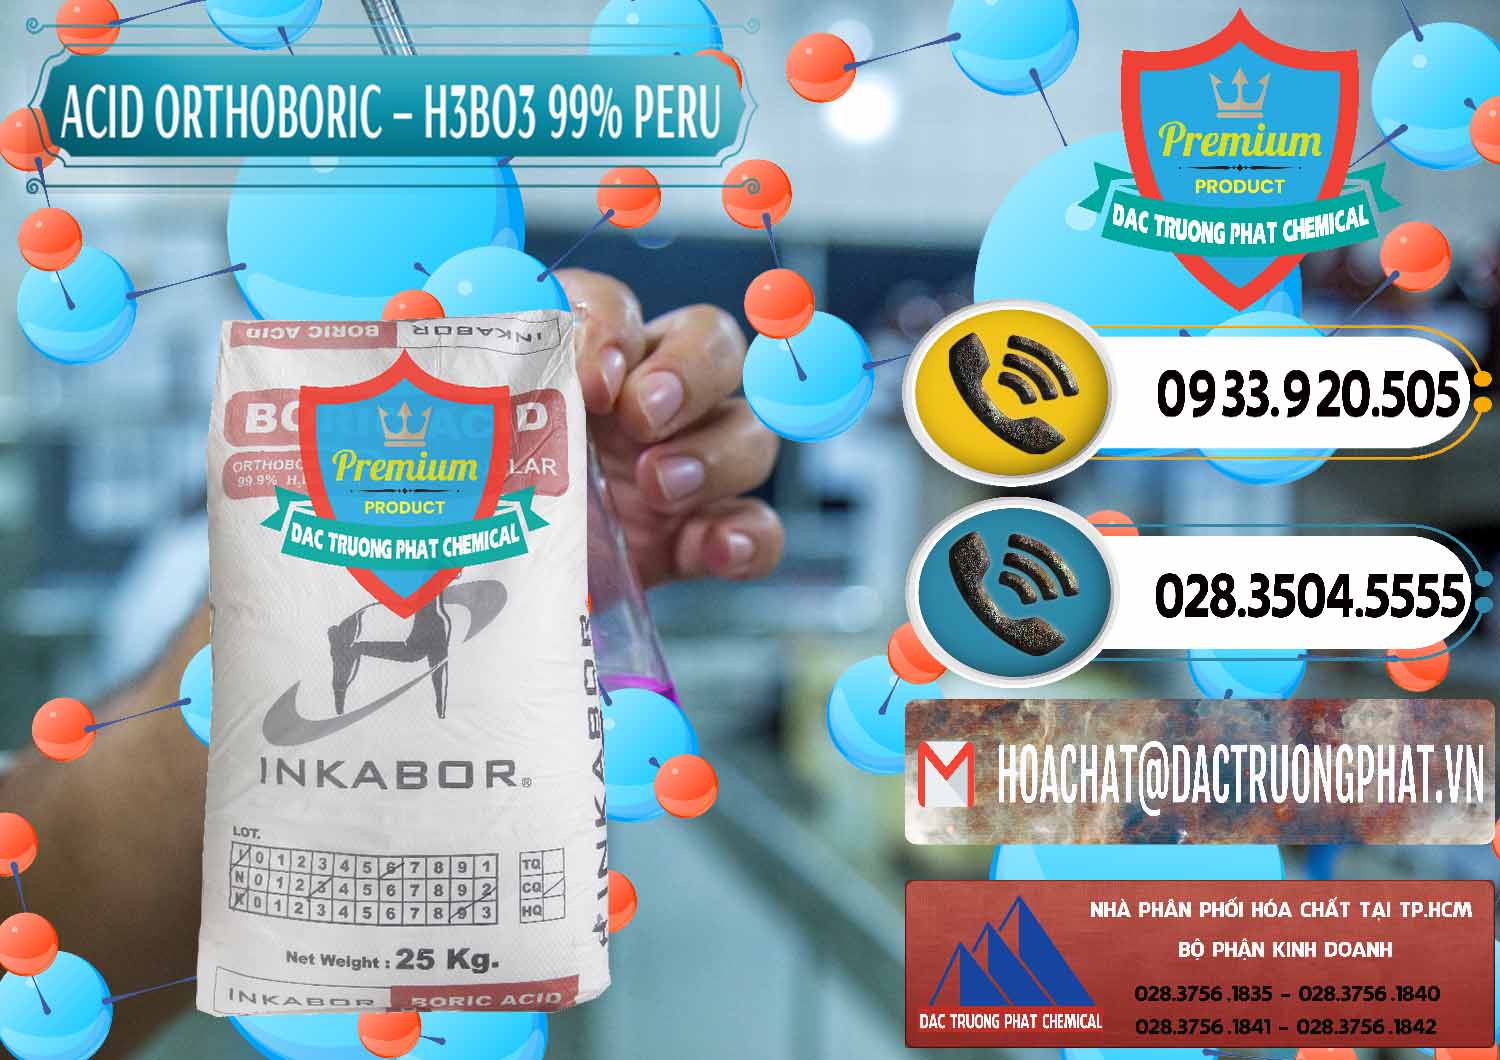 Cty bán _ cung ứng Acid Boric – Axit Boric H3BO3 99% Inkabor Peru - 0280 - Công ty chuyên cung cấp và kinh doanh hóa chất tại TP.HCM - hoachatdetnhuom.vn